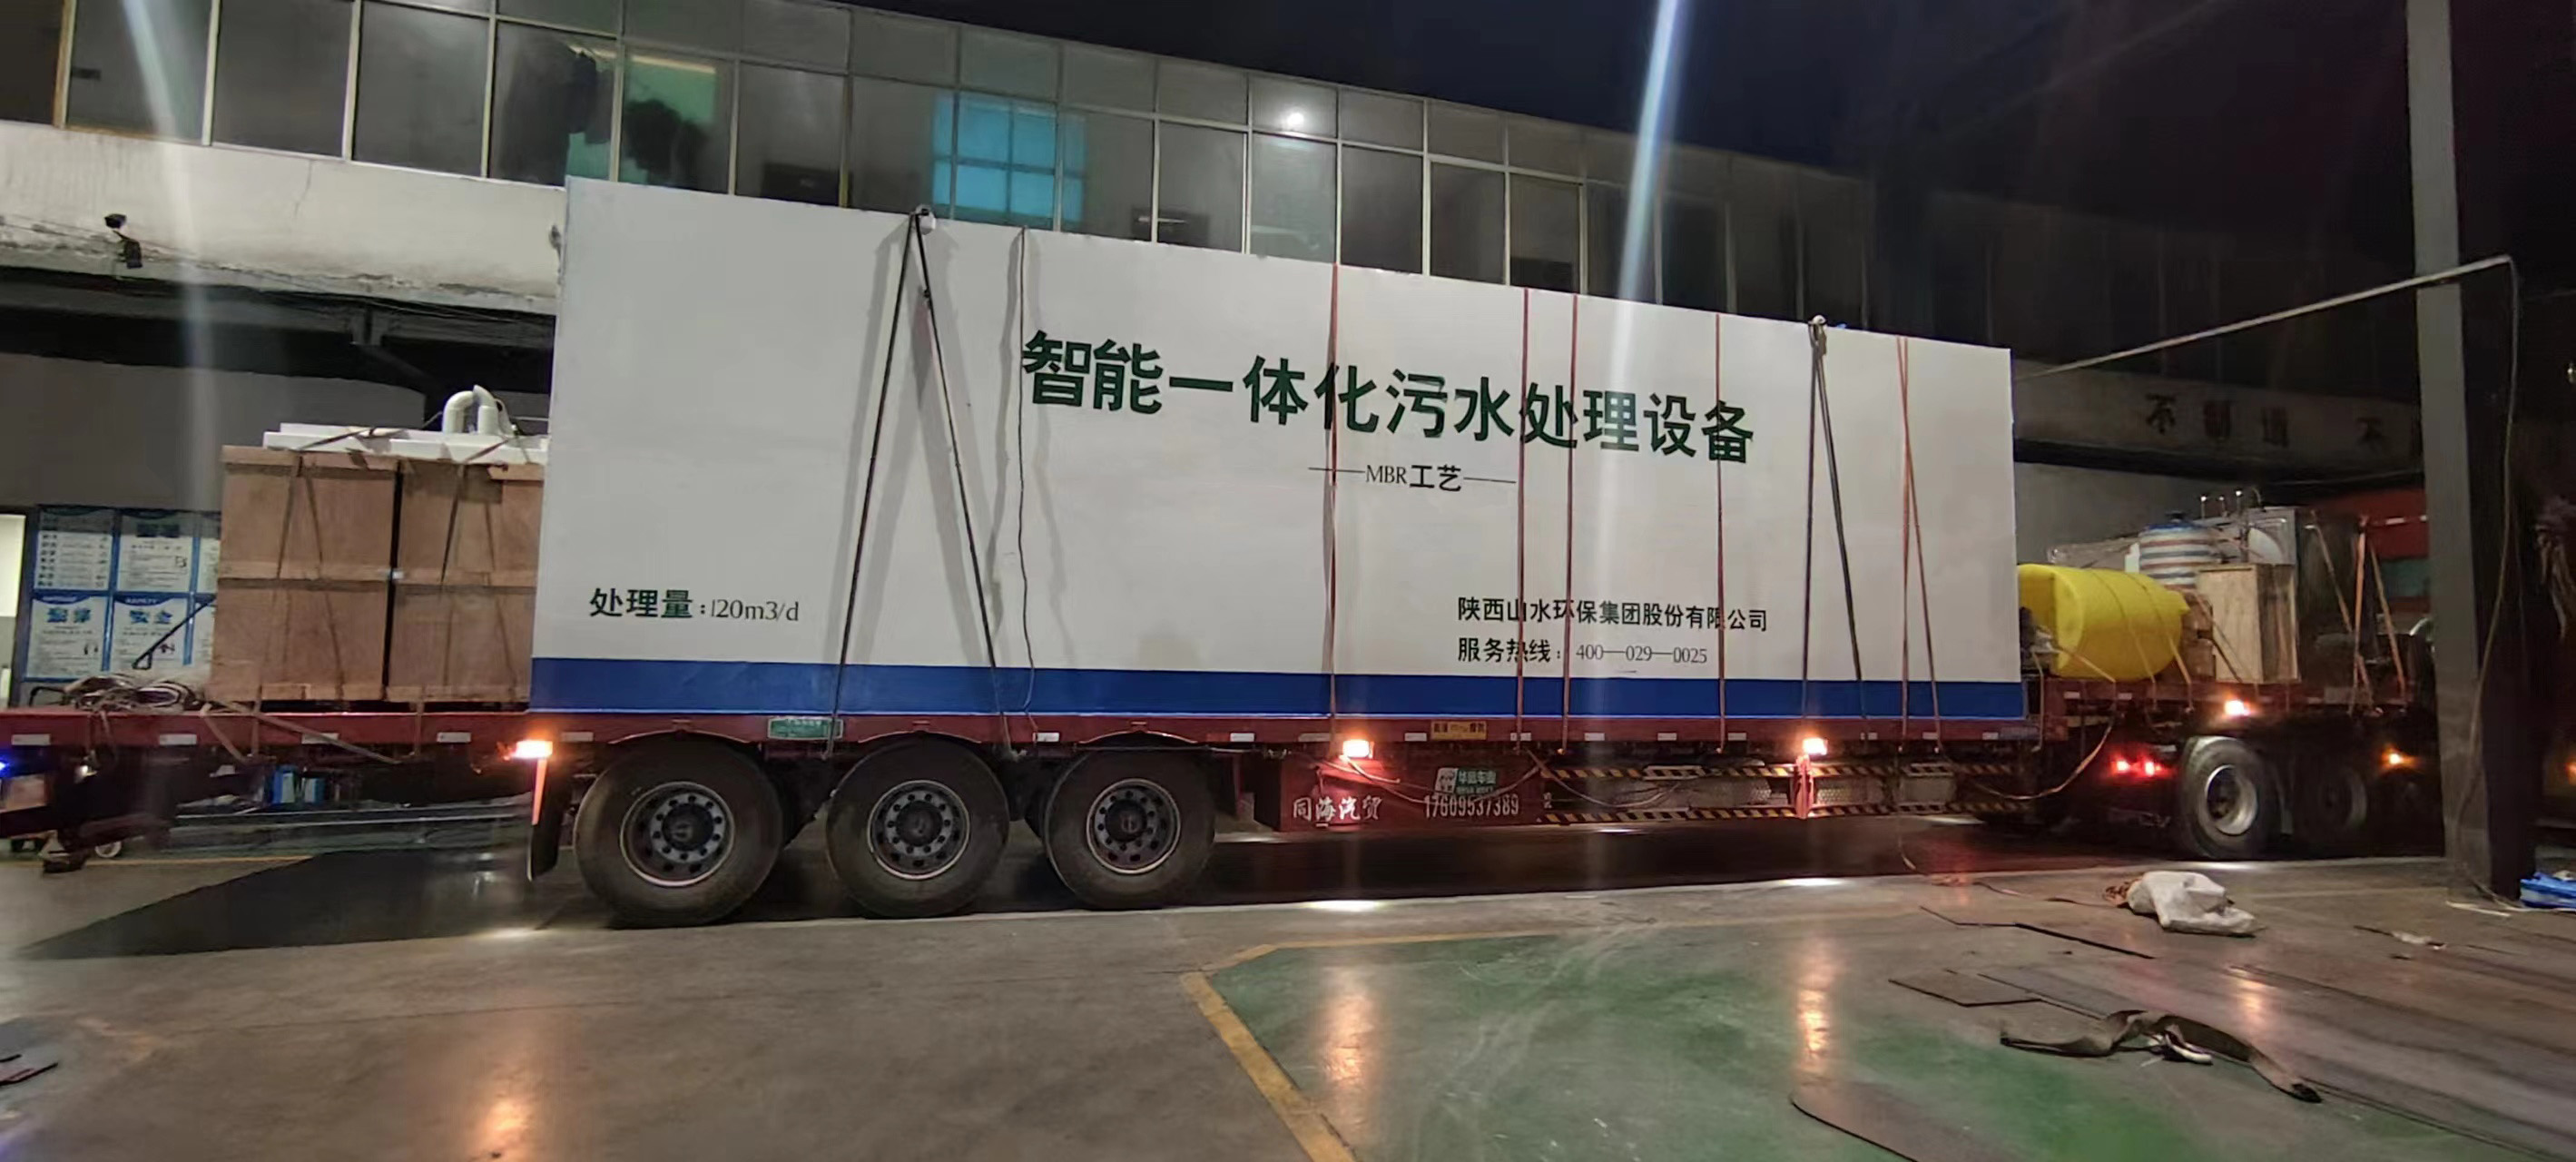 甘肃省玉门市中核实验基地污水处理设备项目